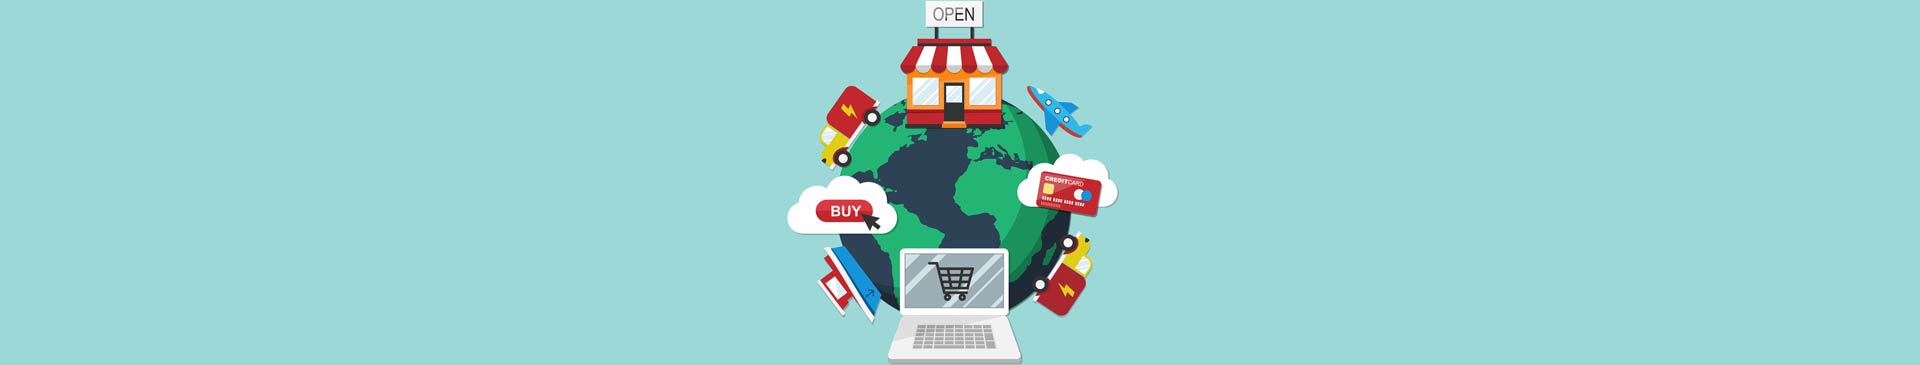 Consideraciones importantes antes de abrir una tienda online (infografía)